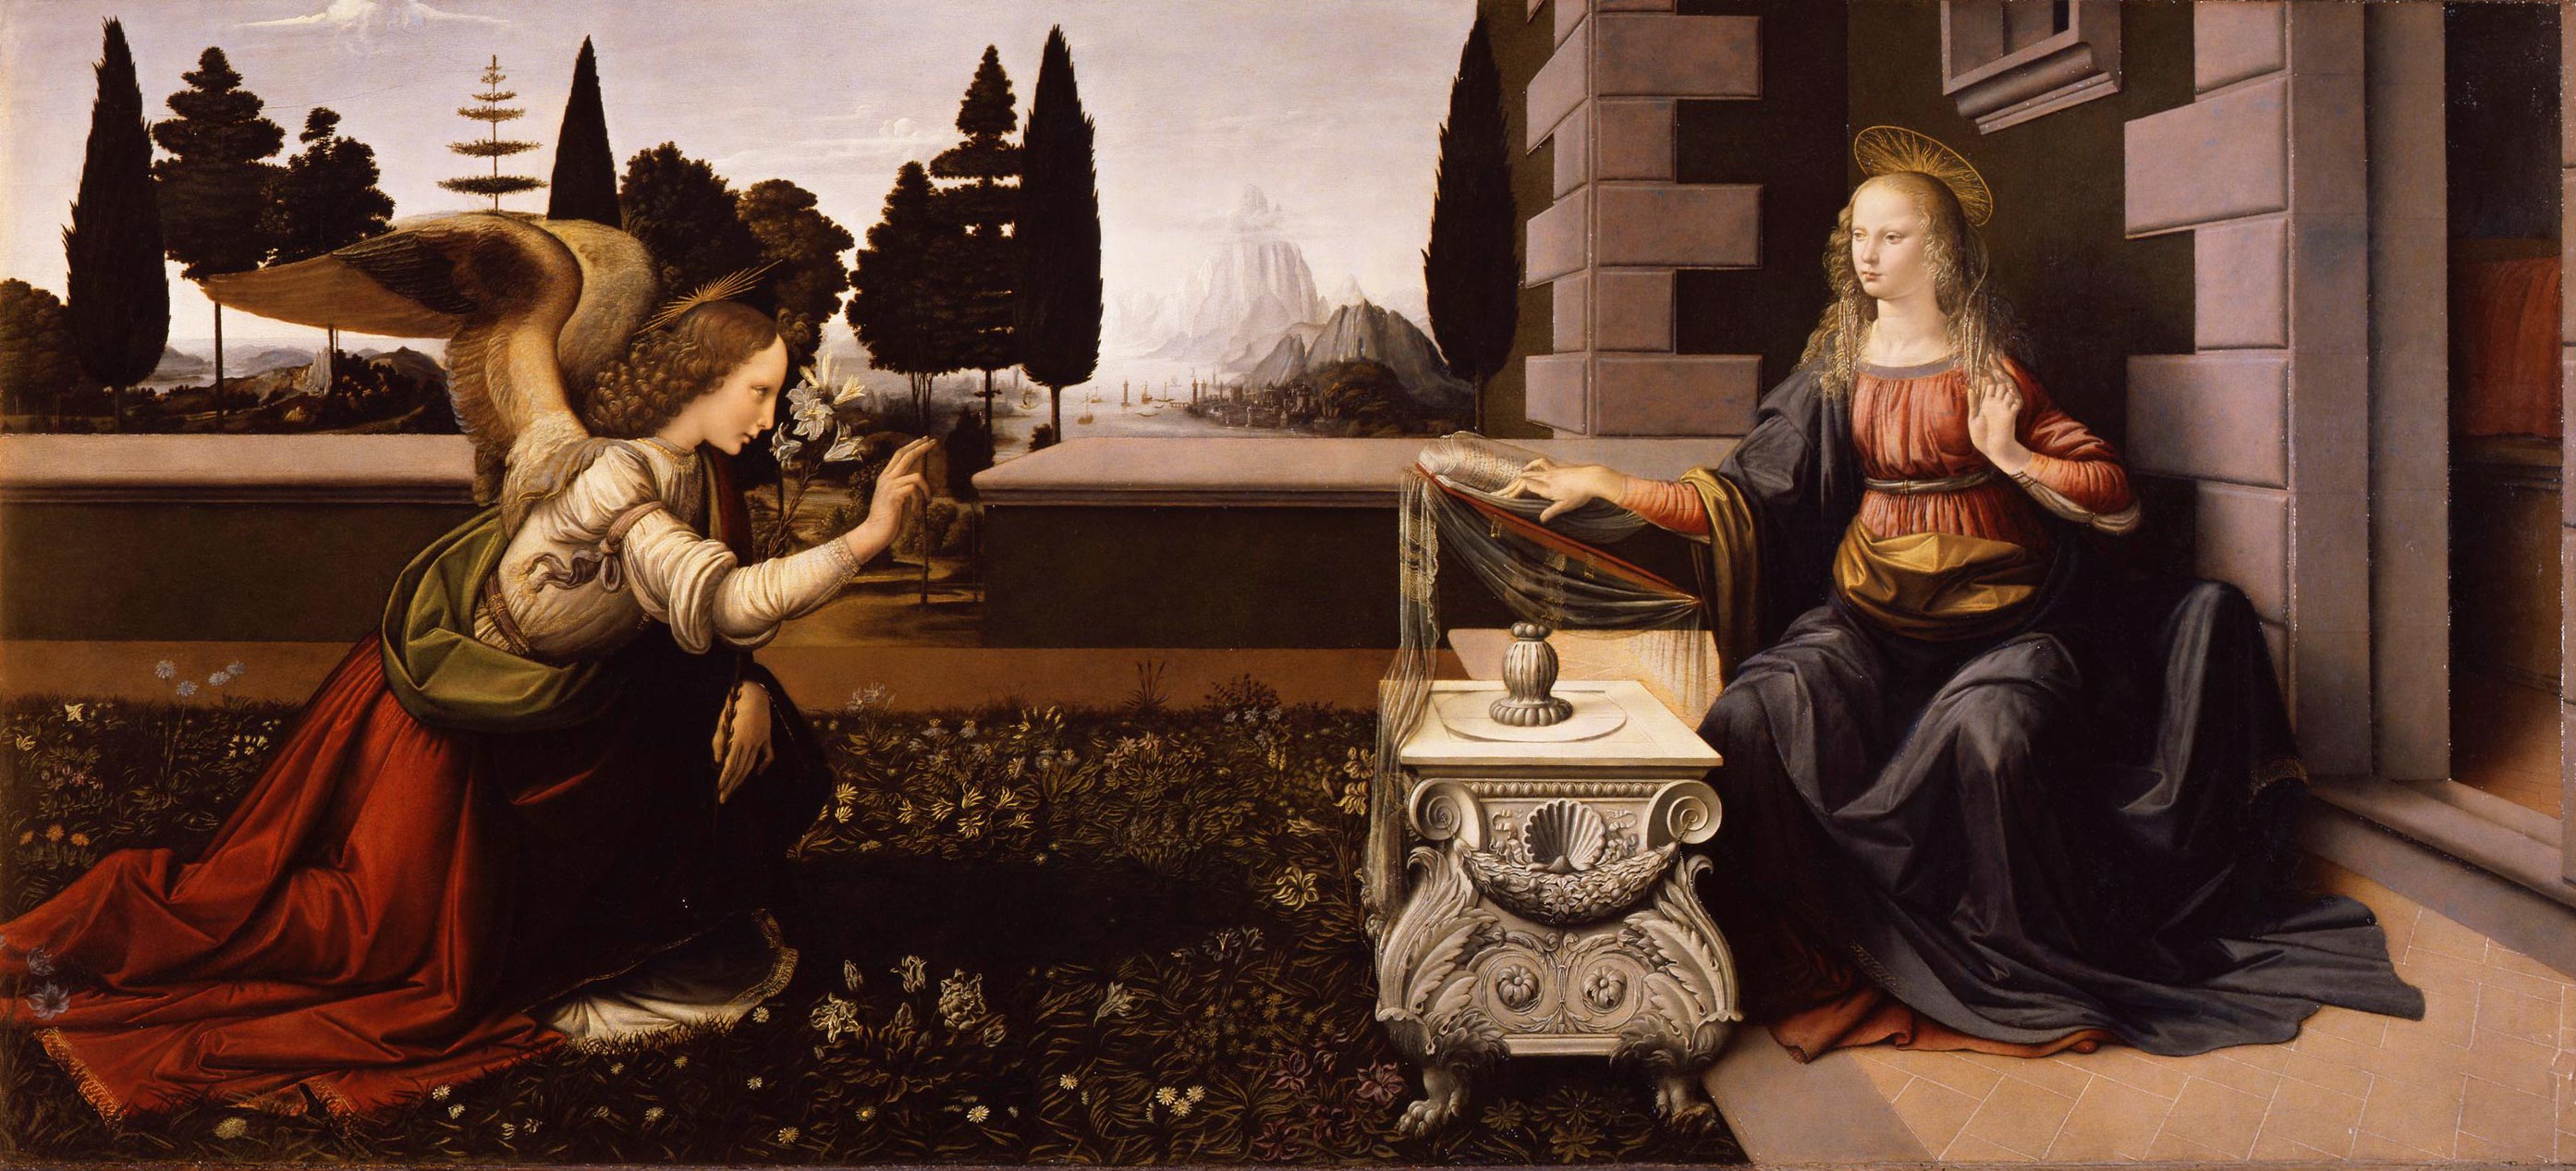 Leonardo da Vinci, Annunciation (c. 1472; oil on panel, 90 x 222 cm; Florence, Uffizi Gallery, inv. 1890 no. 1618)